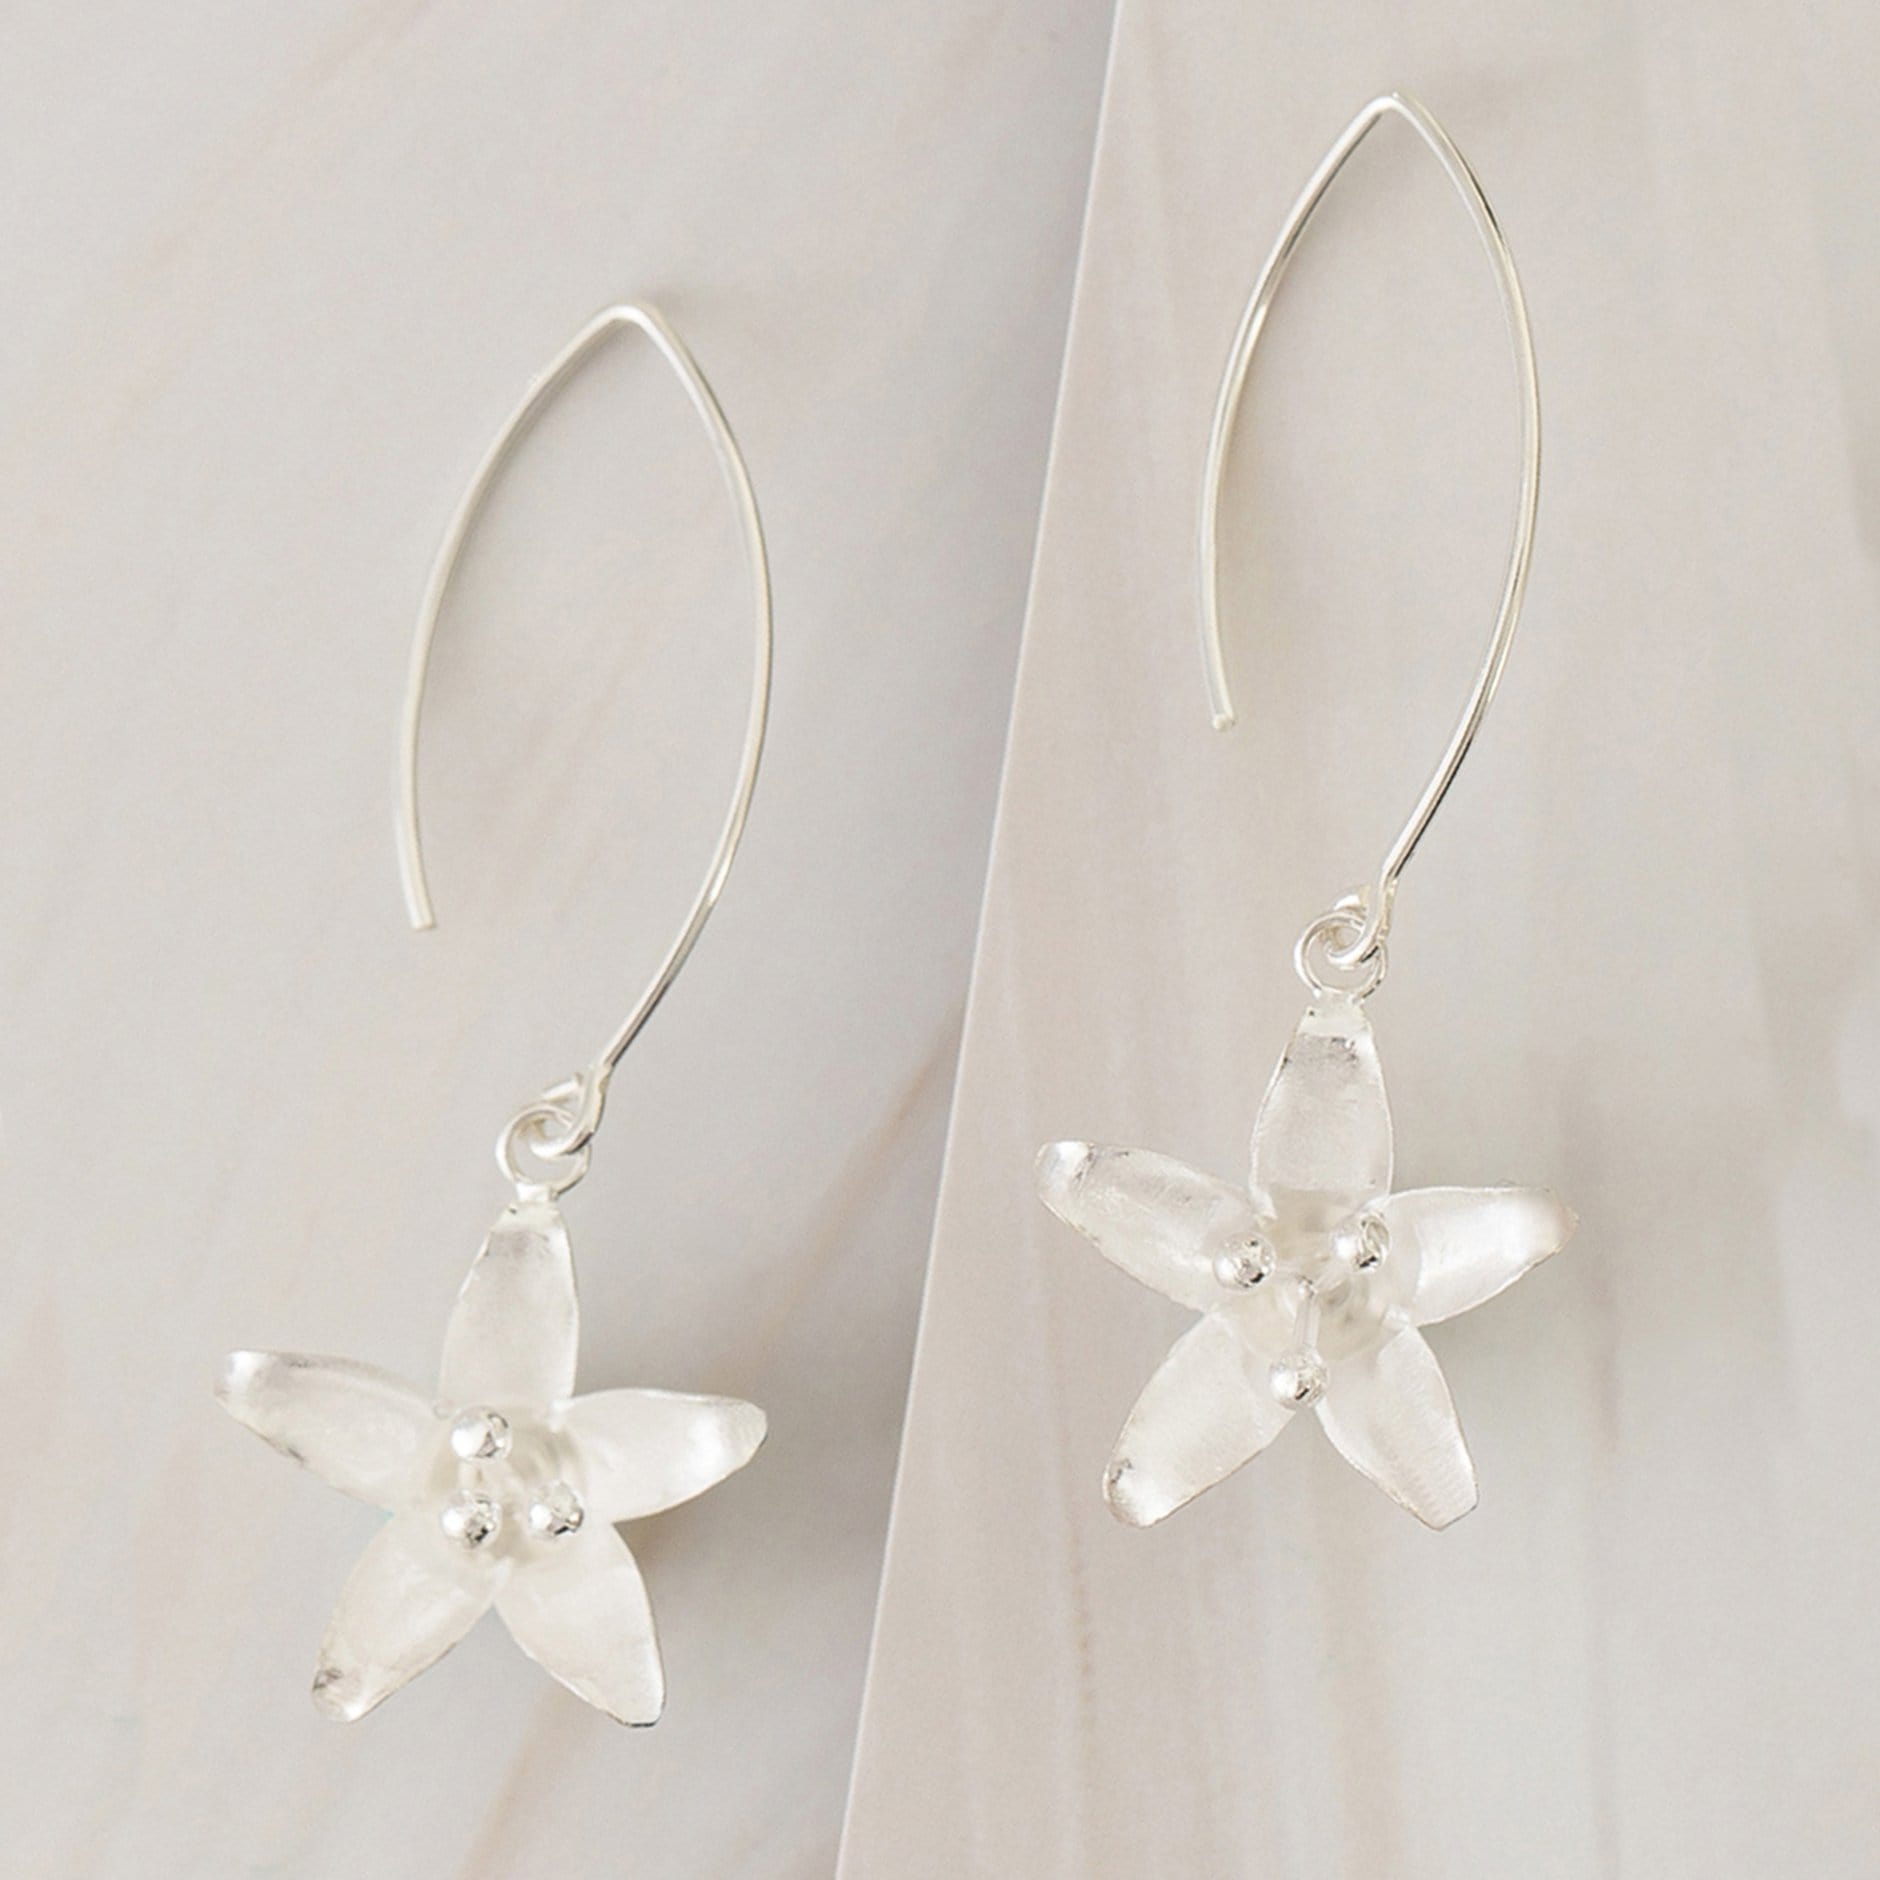 Emblem Jewelry Earrings Silver Tone Spring Starflower Drop Earrings